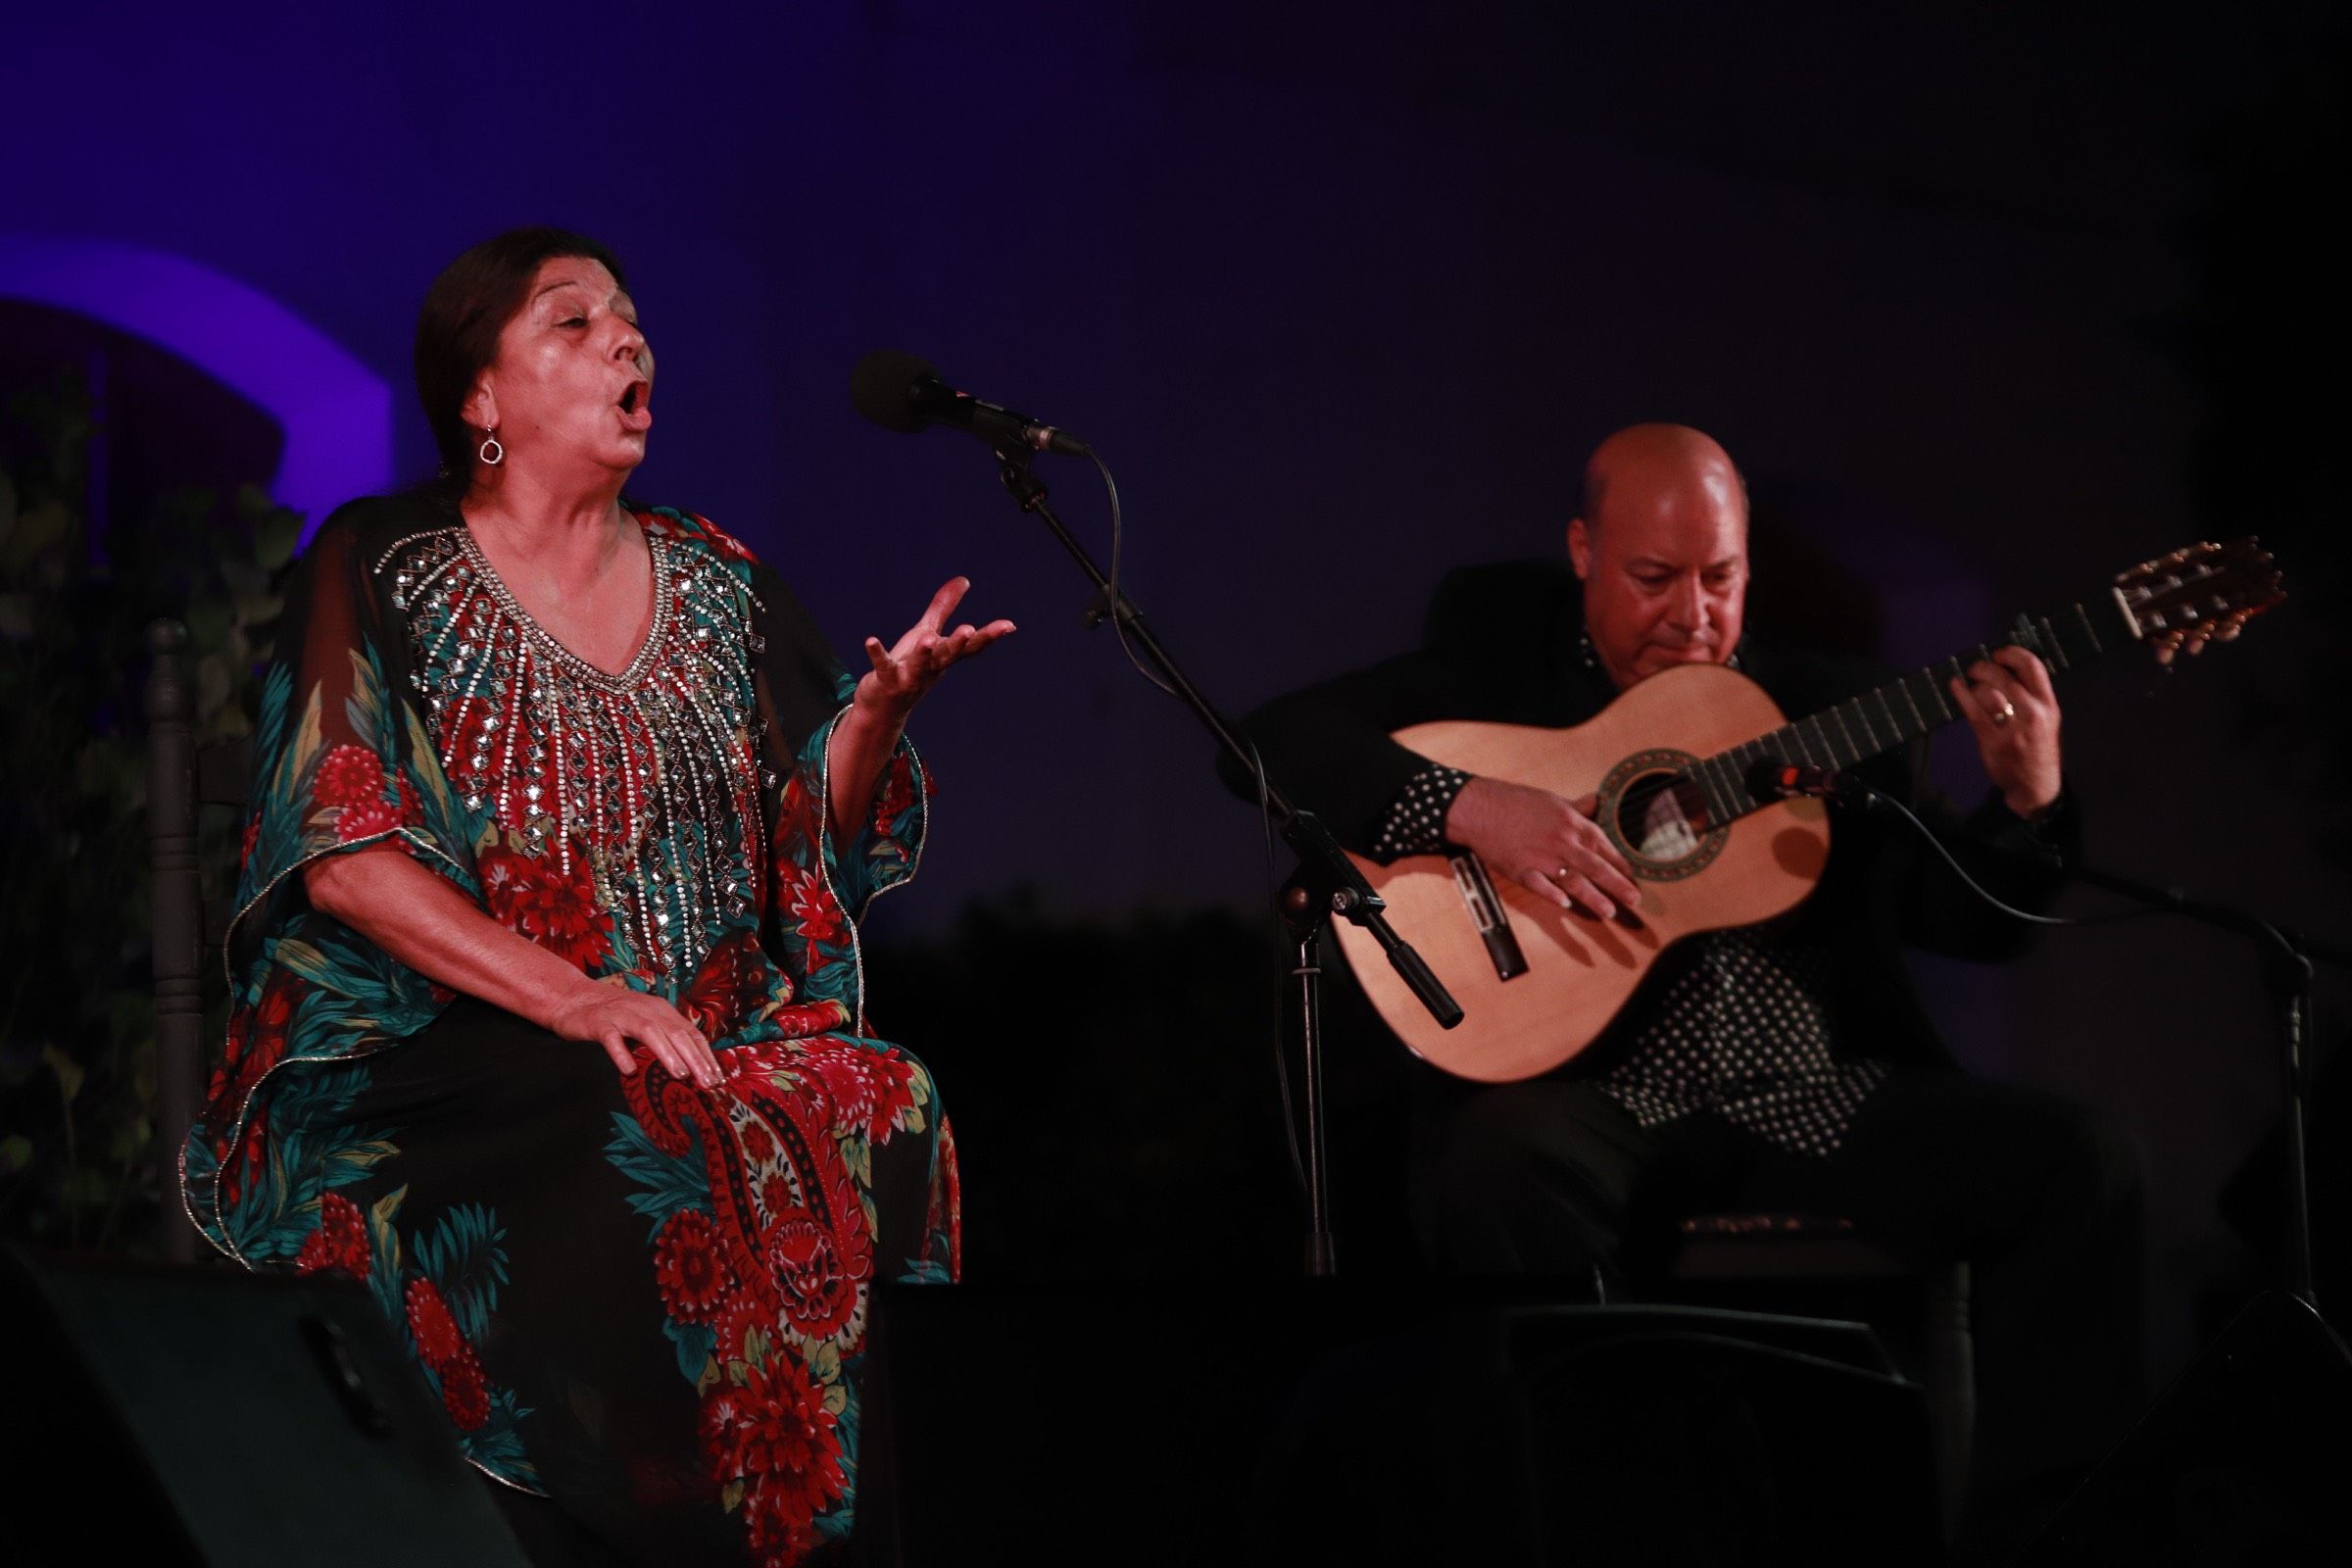 Dolores Agujetas y Domingo Rubichi será uno de los prinicpales atractivos de la programación que llevará a cabo la Peña Flamenca Luis de la Pica en Jerez